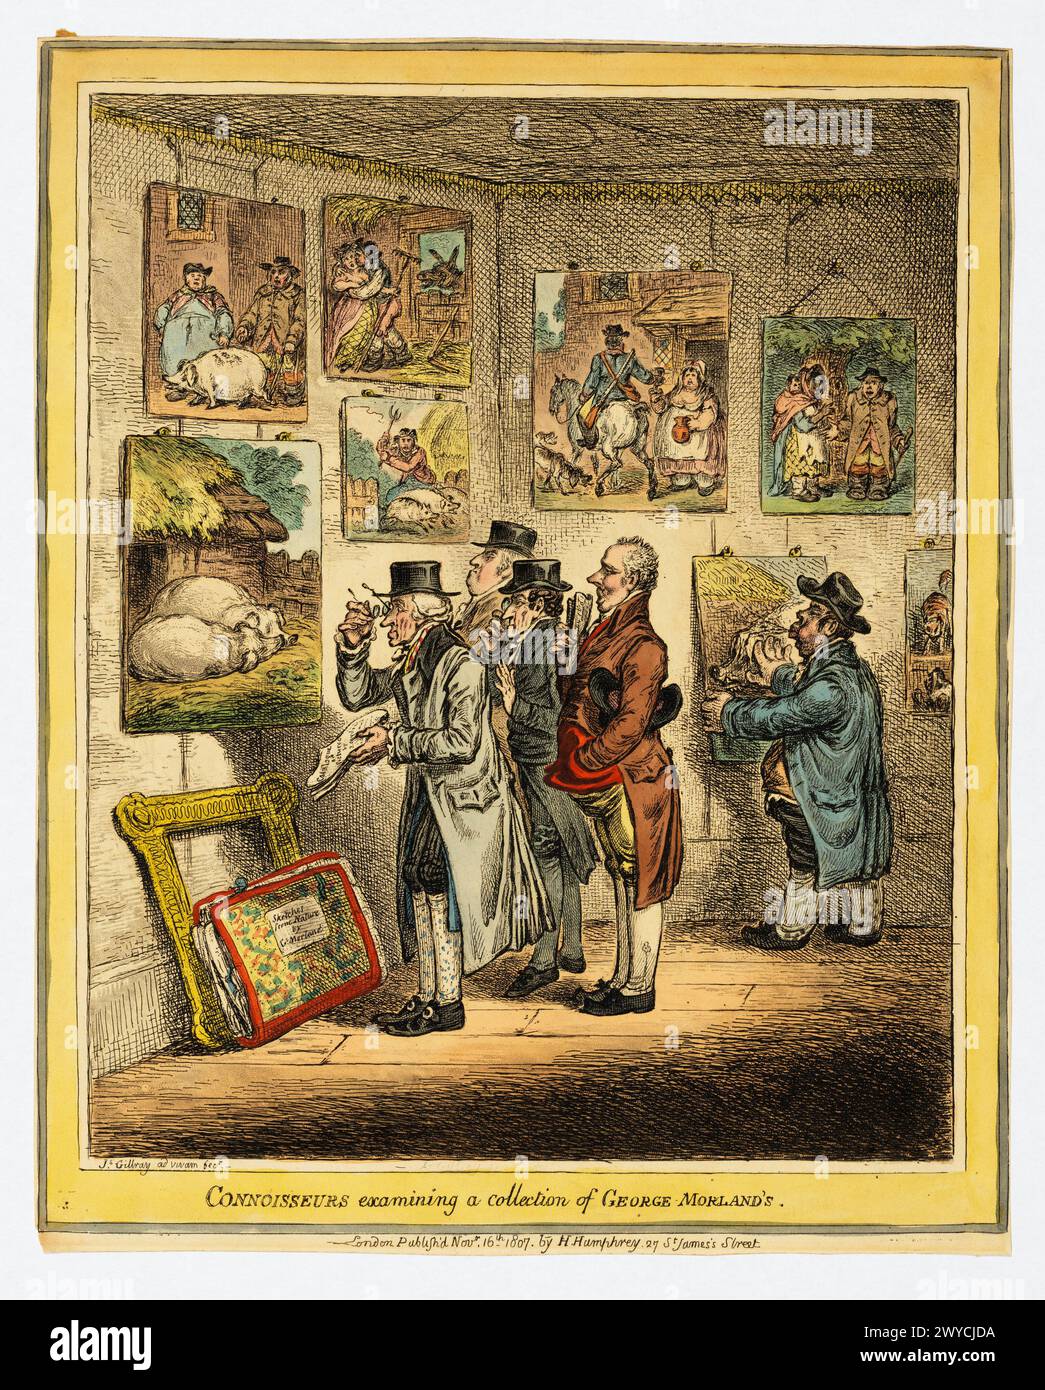 Kenner untersuchen eine Sammlung von George Morland James Gillray, herausgegeben von Hannah Humphrey. 16. November 1807. Handgefärbtes Ätzen. Stockfoto